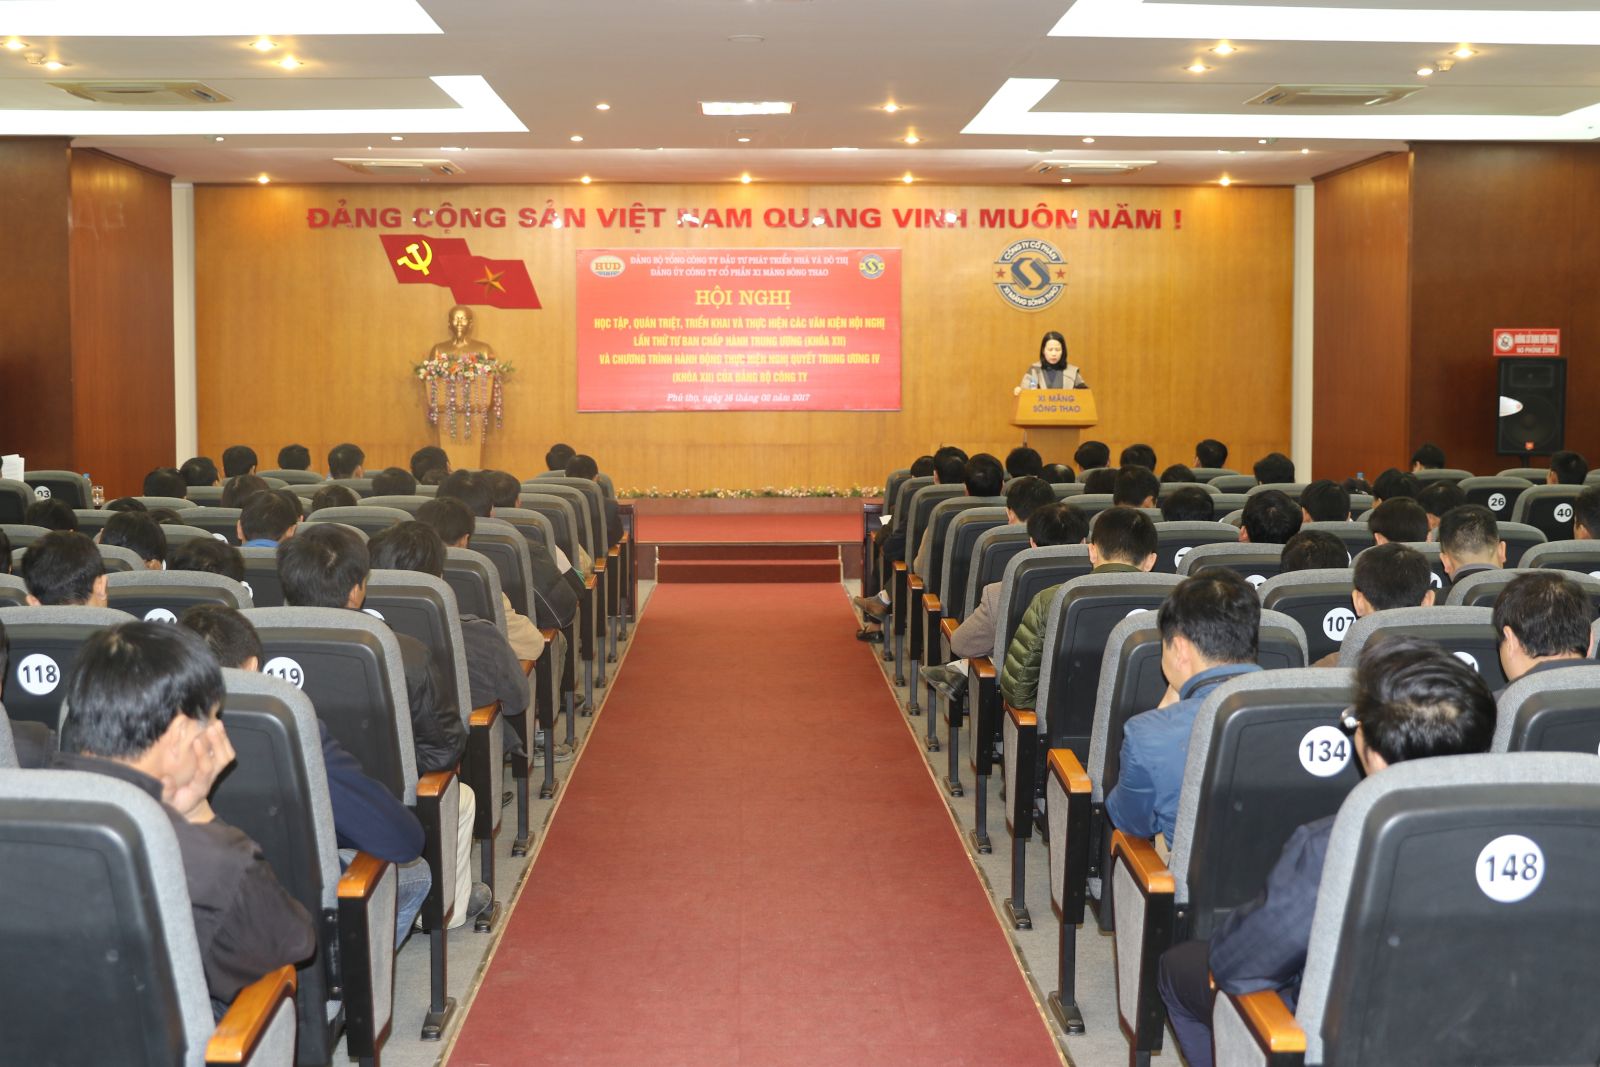 Đảng ủy Công ty cổ phần xi măng Sông Thao tổ chức Hội nghị học tập, quán triệt triển khai Nghị quyết Hội nghị Trung ương 4 khóa XII